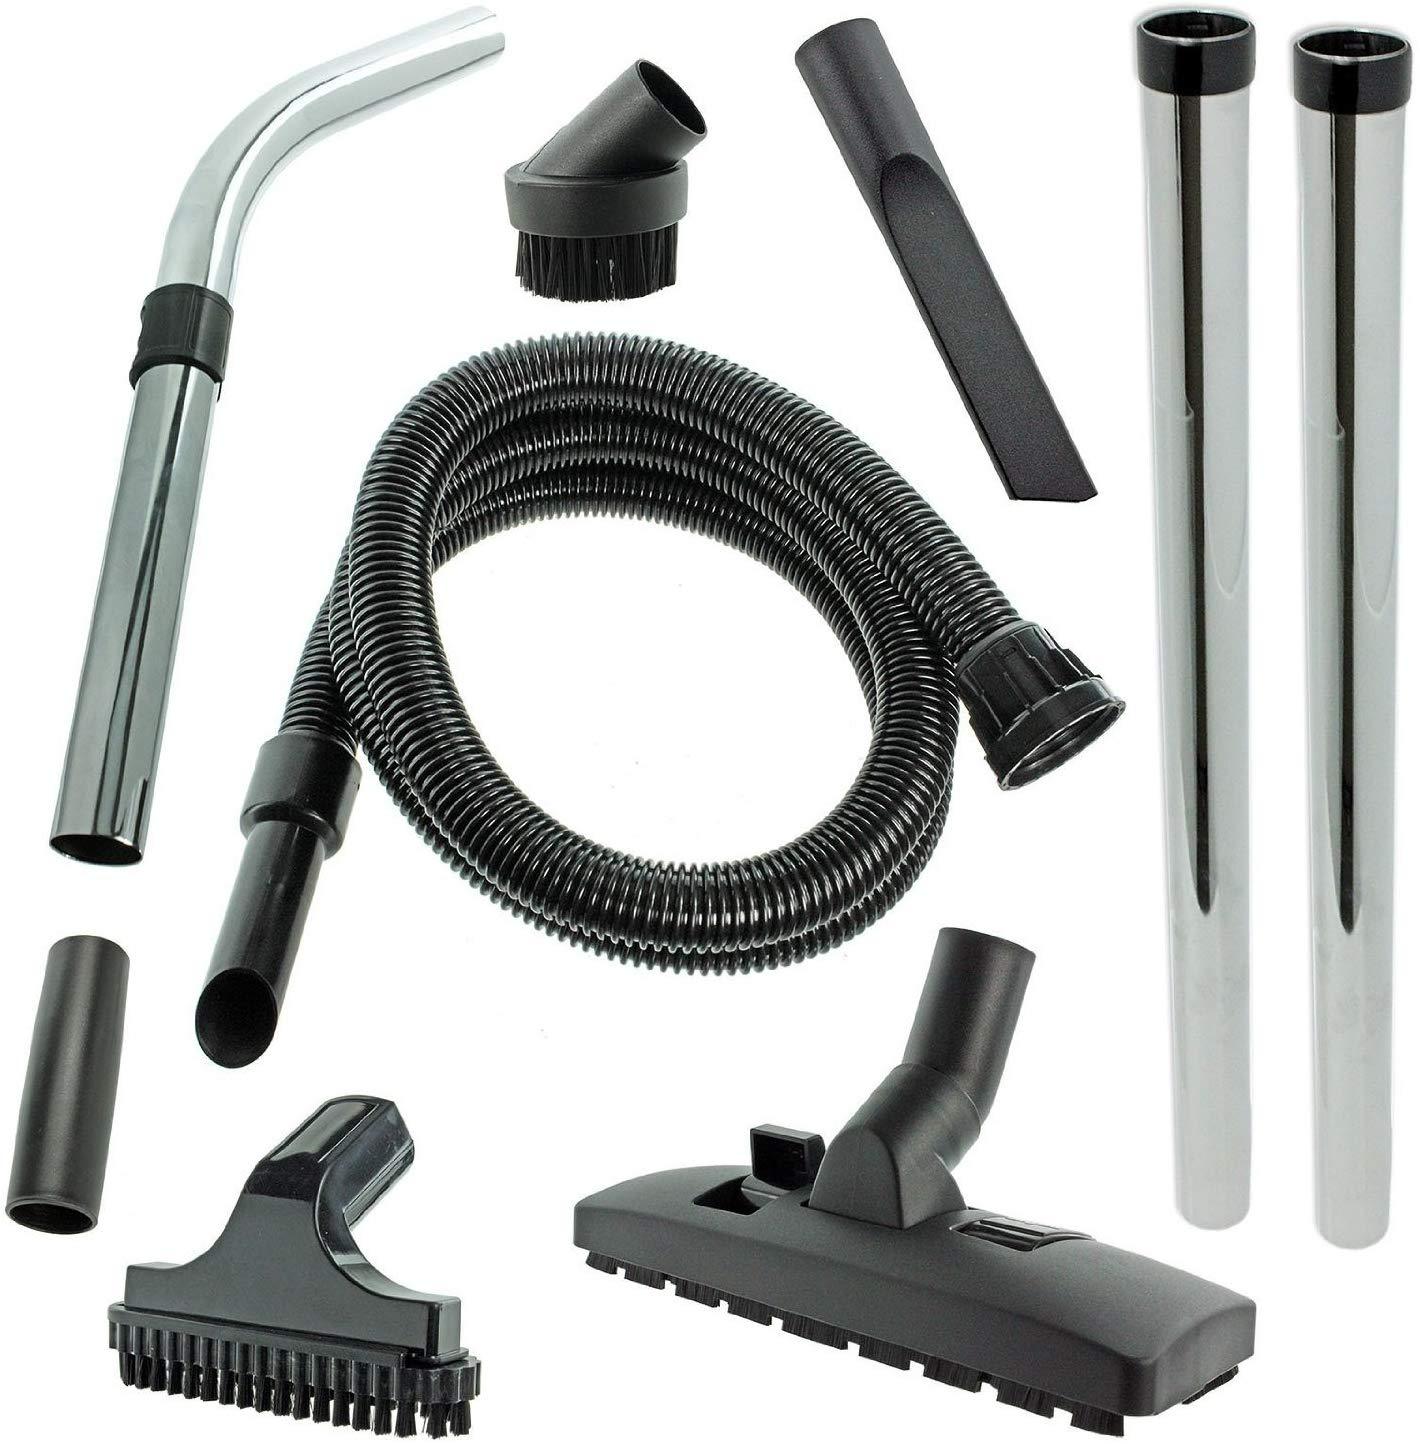 SPARES2GO Hose & Tool Kit For Numatic Henry HVR200 HVR200T HVC200 Vacuum Cleaner Hoover (2.5m)